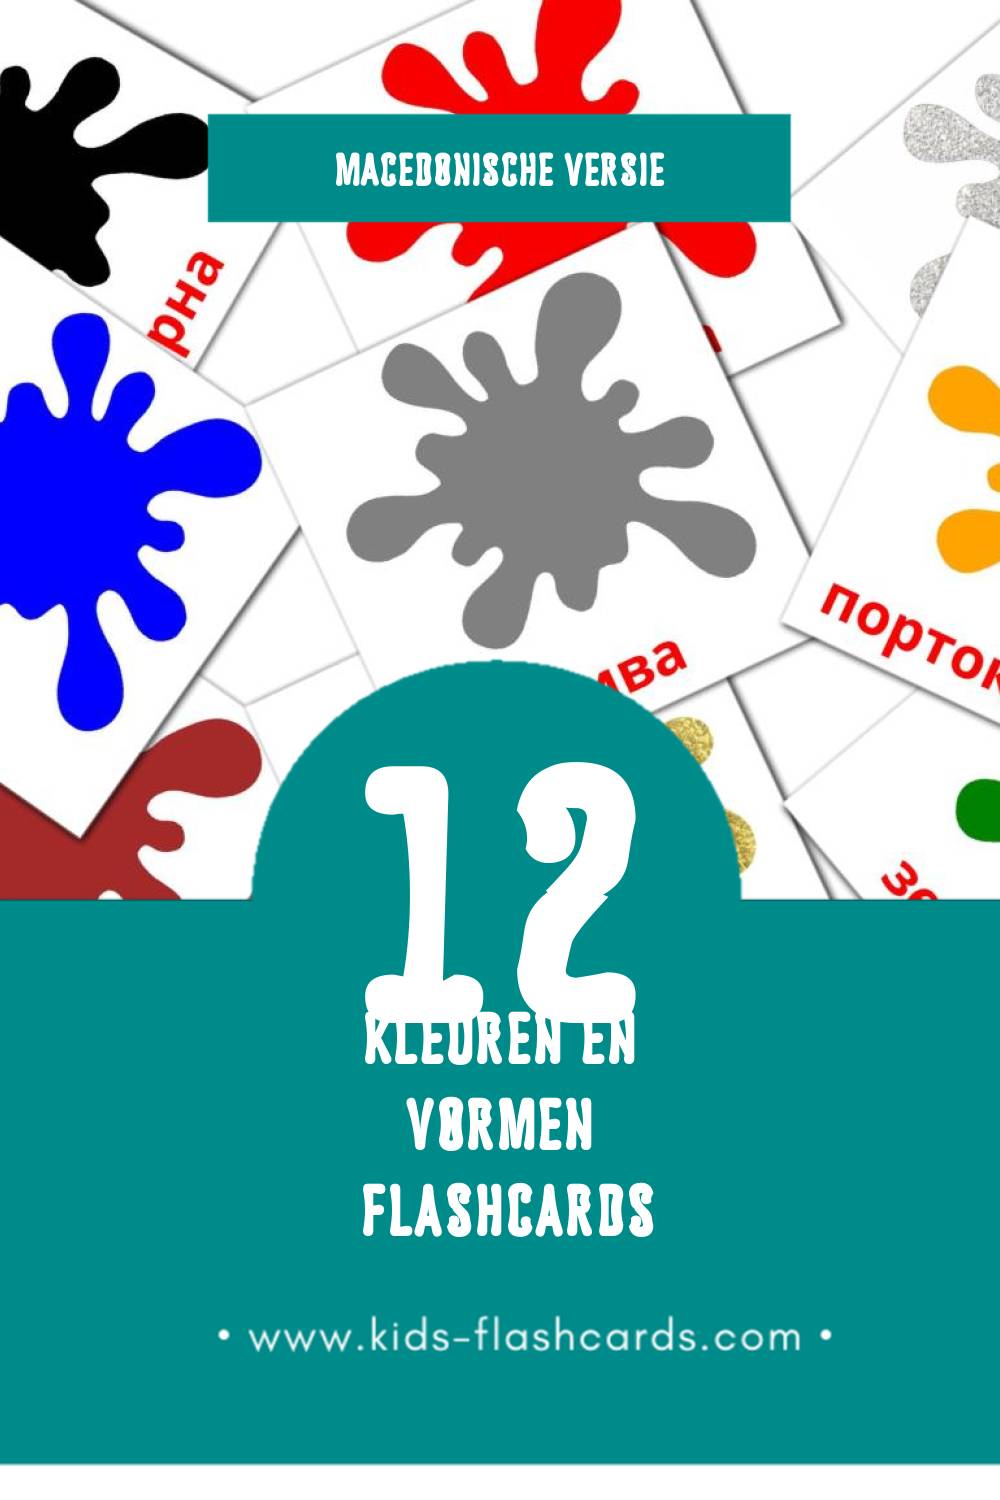 Visuele Бои Flashcards voor Kleuters (12 kaarten in het Macedonisch)